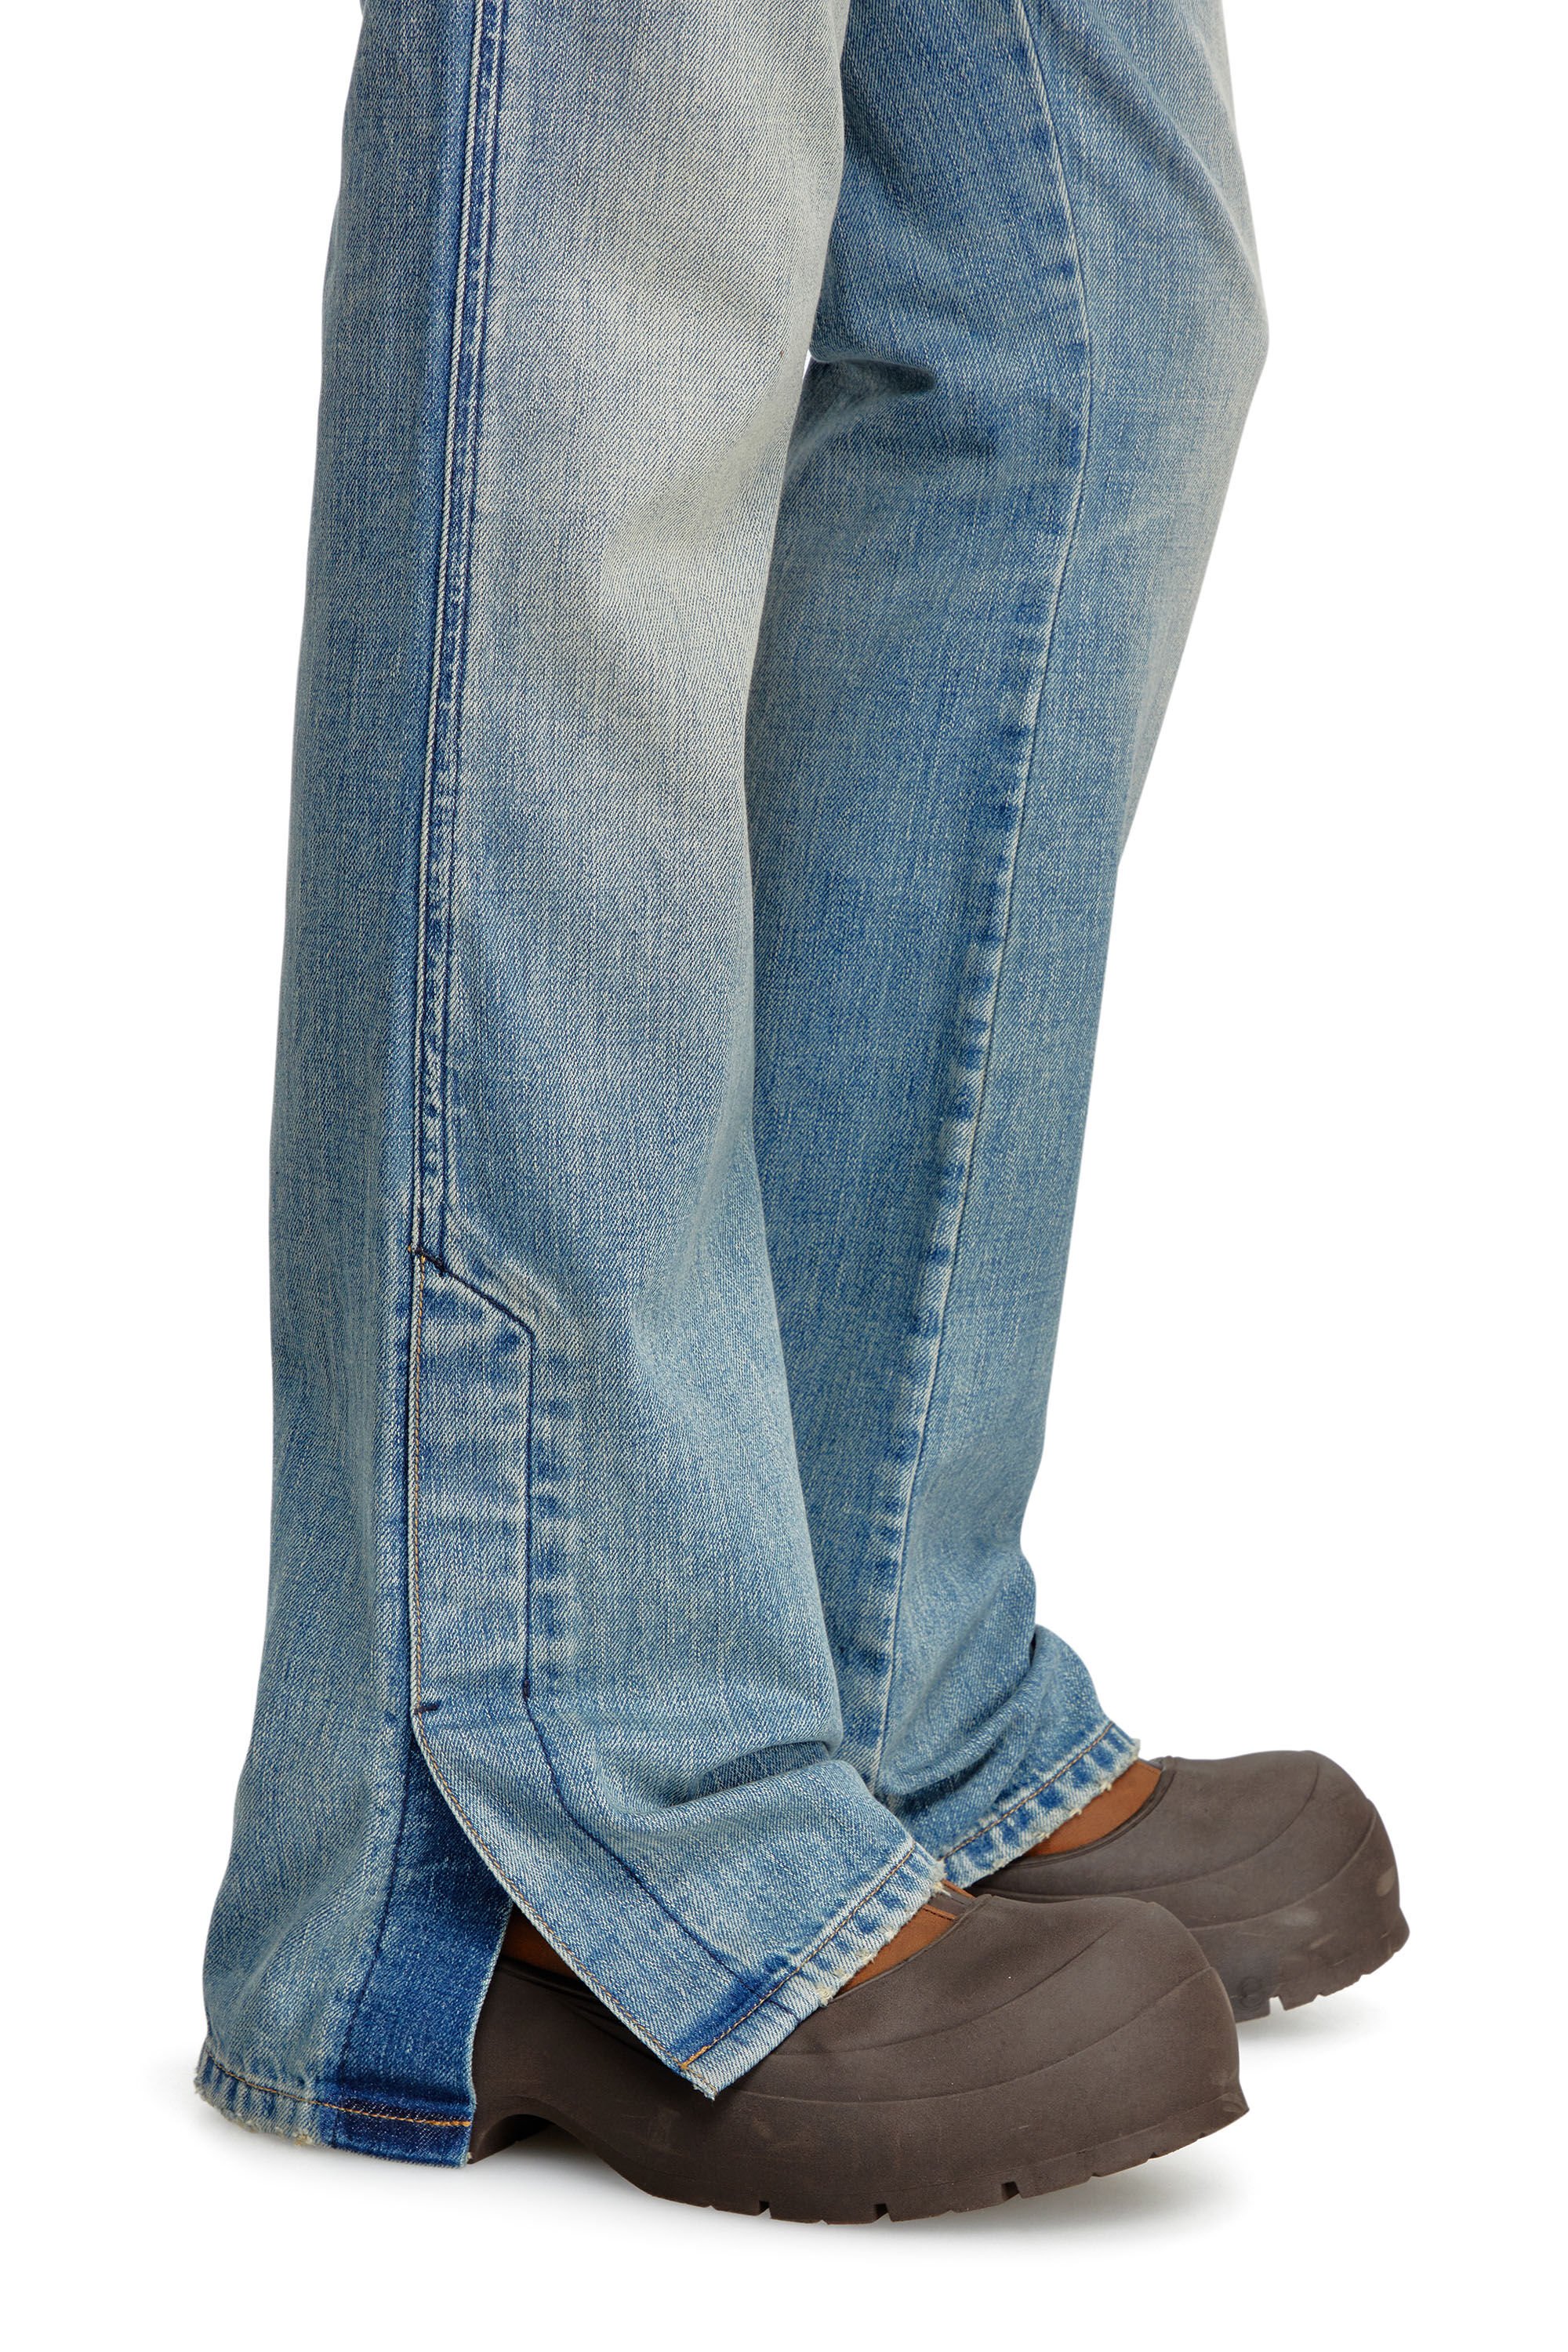 Diesel - Bootcut Jeans D-Backler 0GRDN, Hombre Bootcut Jeans - D-Backler in Azul marino - Image 5